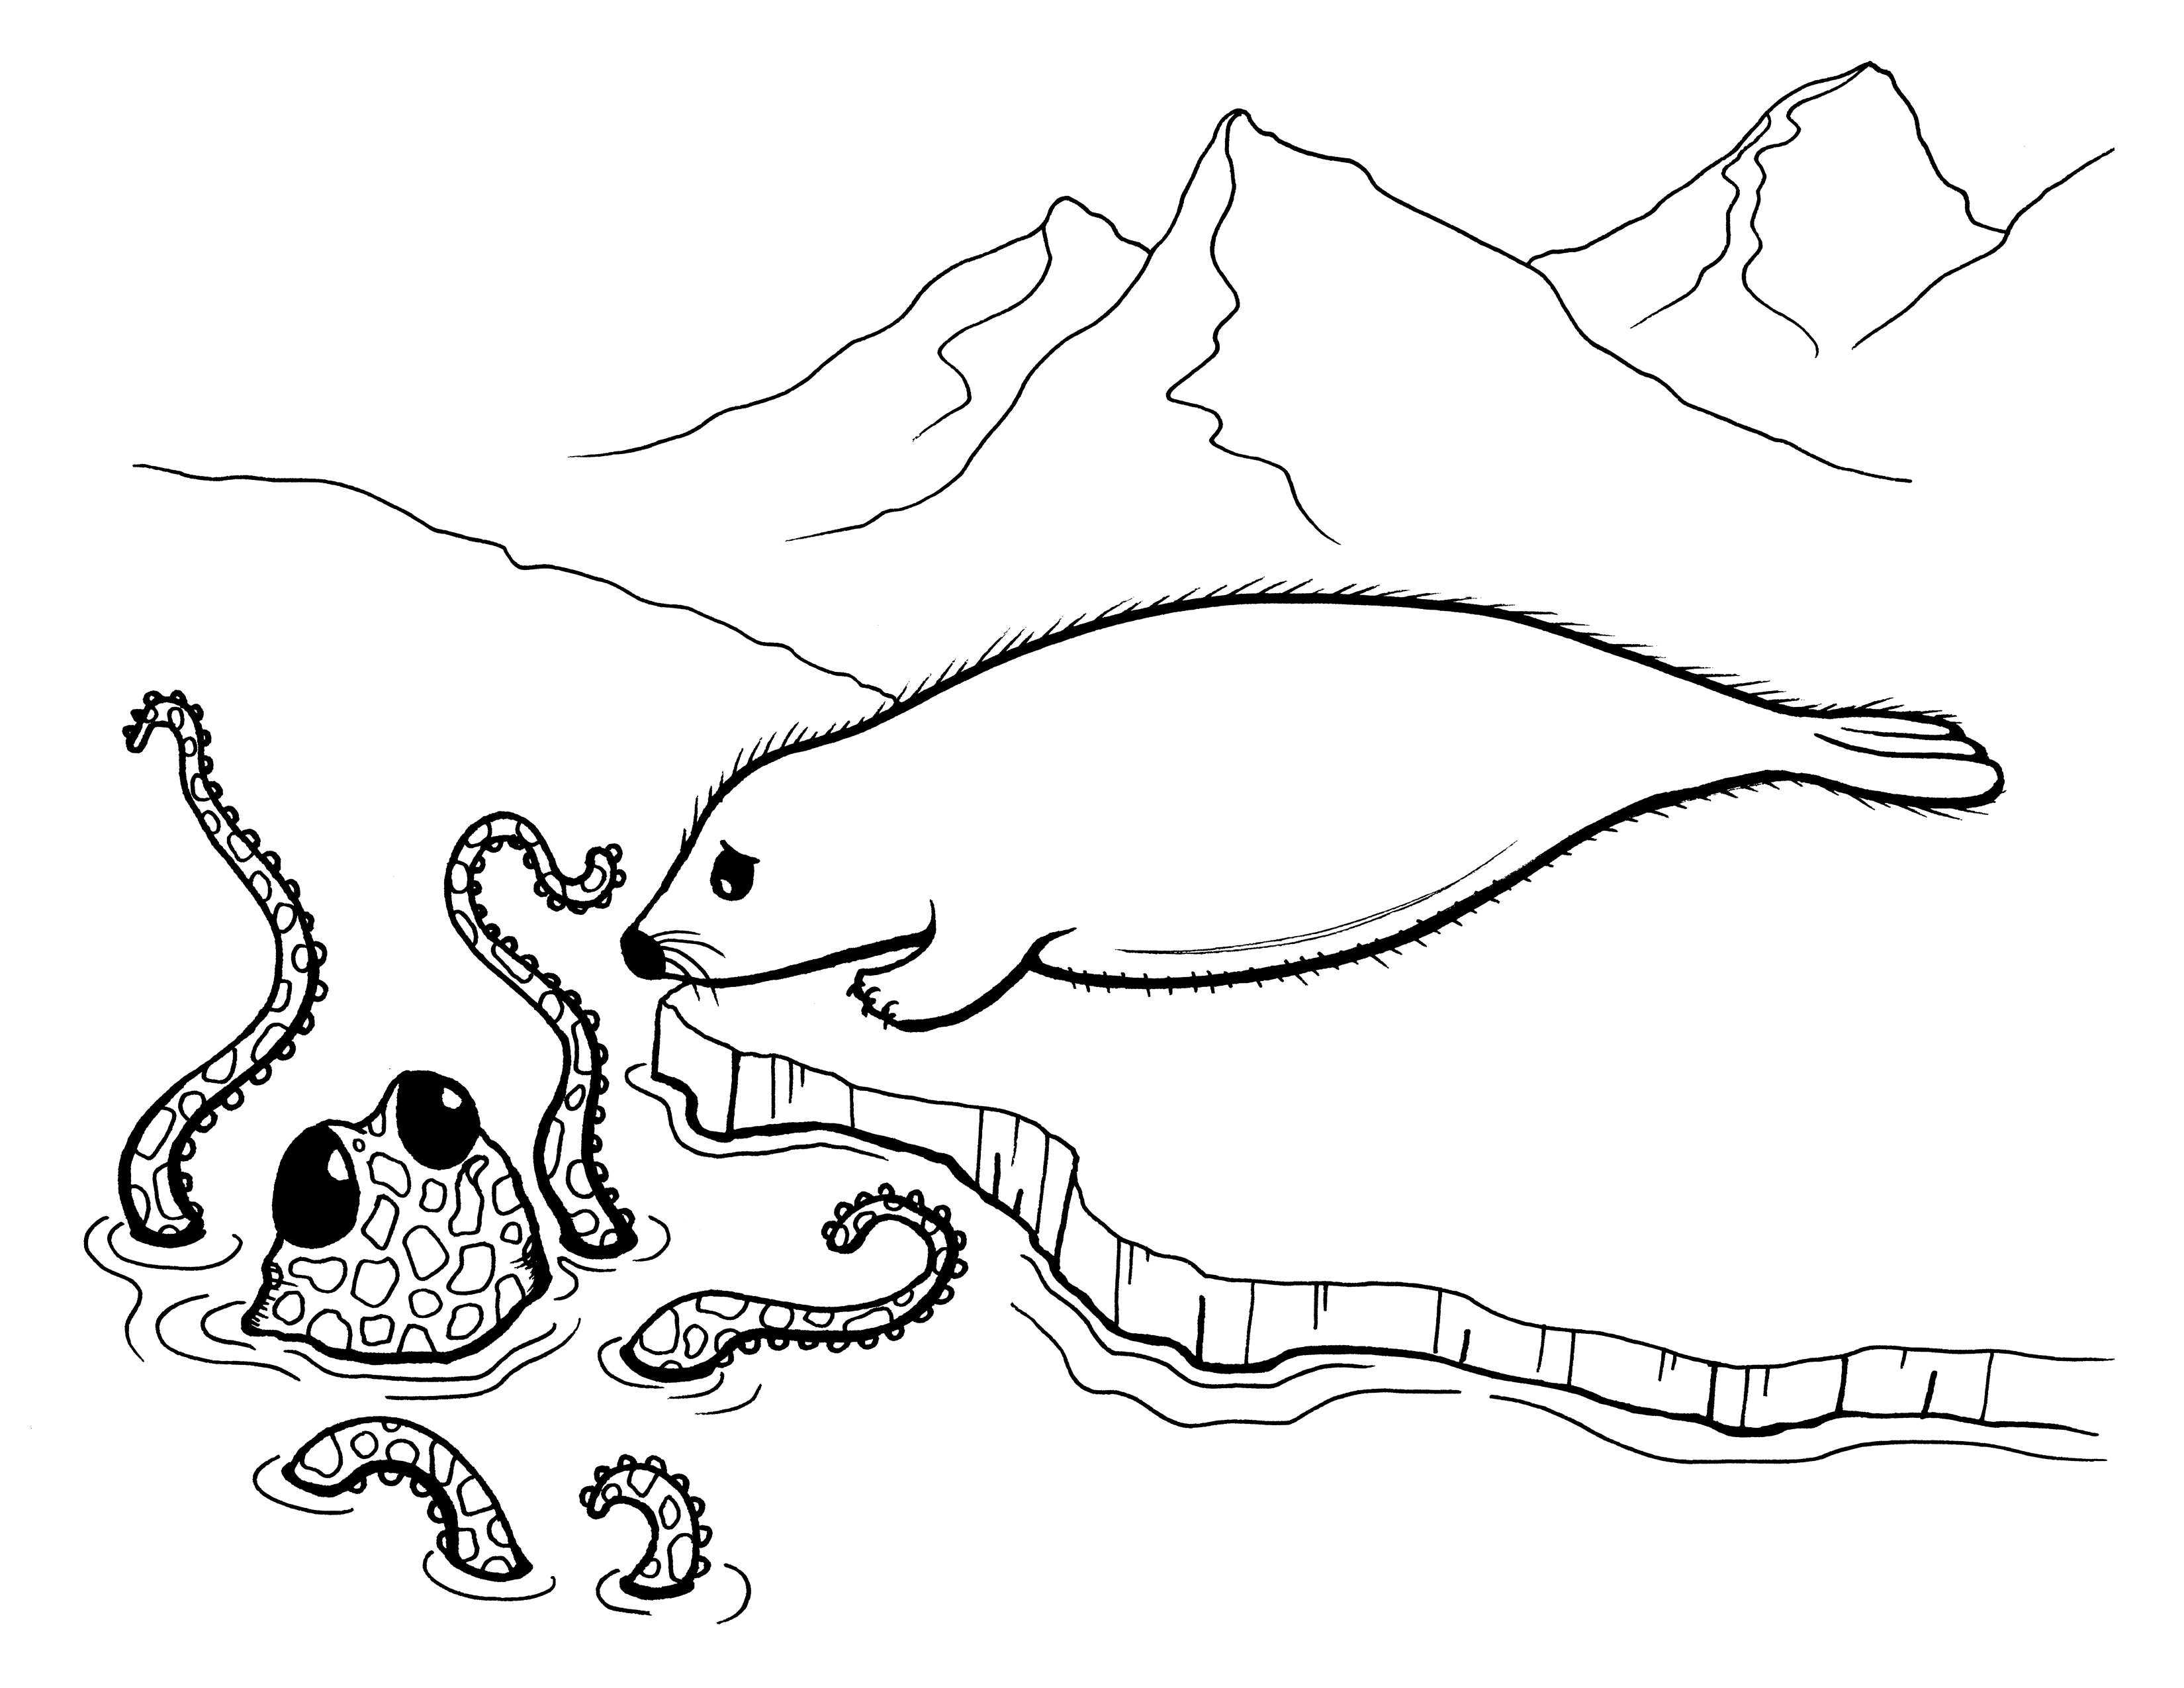 Harp Seal coloring #11, Download drawings